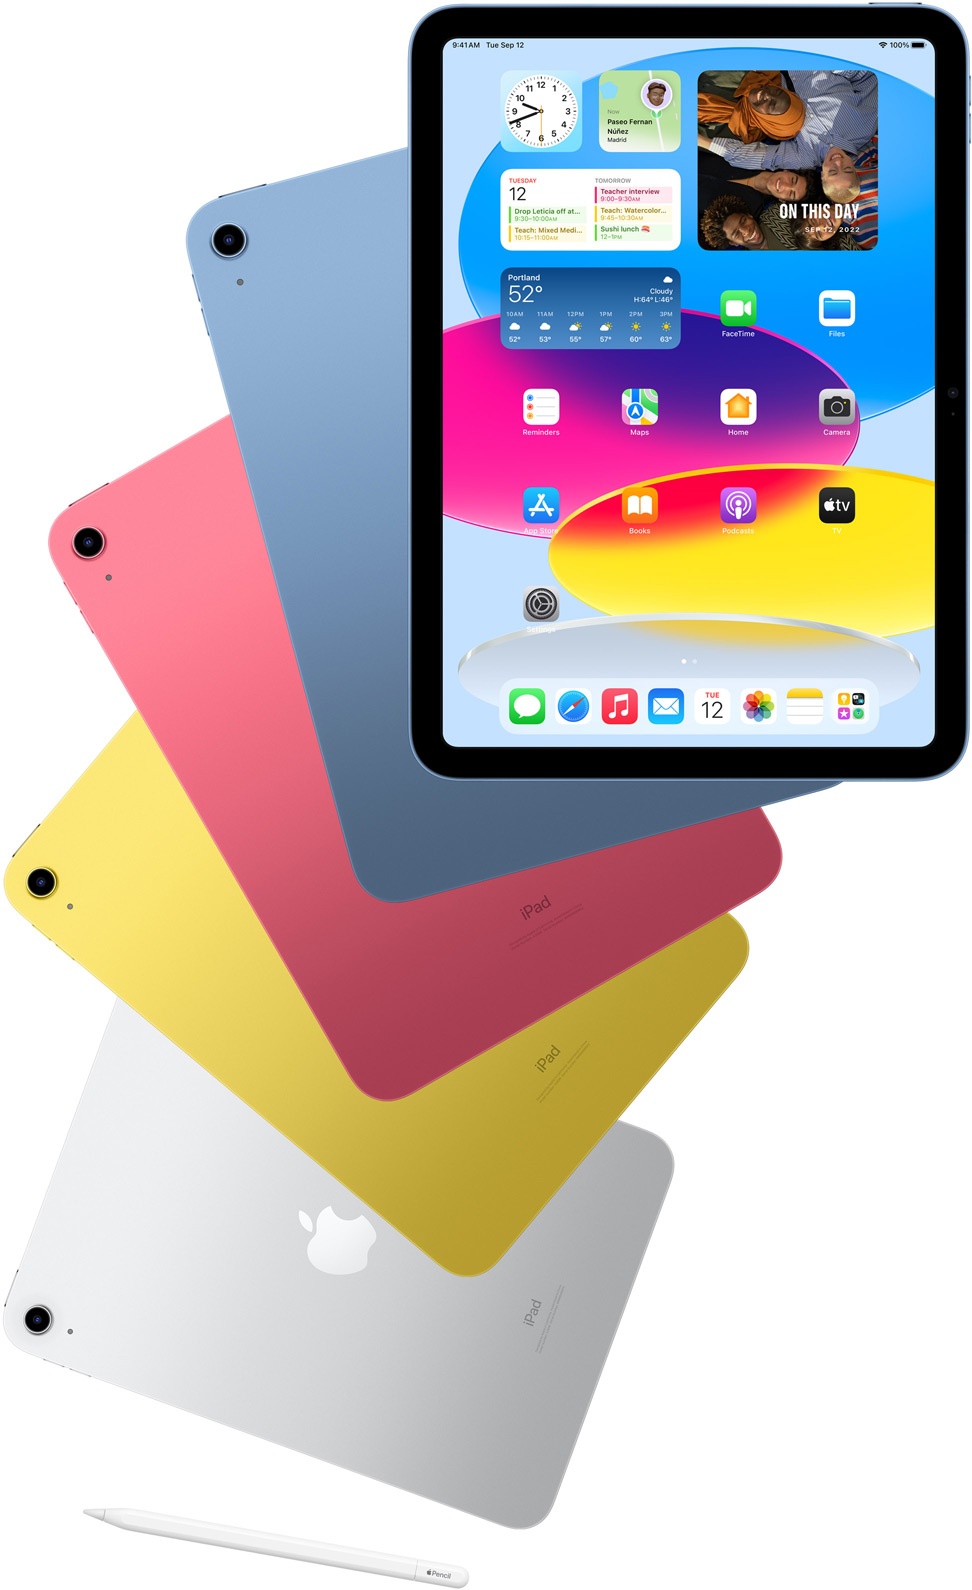 iPad som viser en Hjem-skjerm sett forfra, foran iPader i blå, rosa, gul og sølvfinish sett bakfra. En Apple Pencil er plassert ved viften med iPad-modeller.